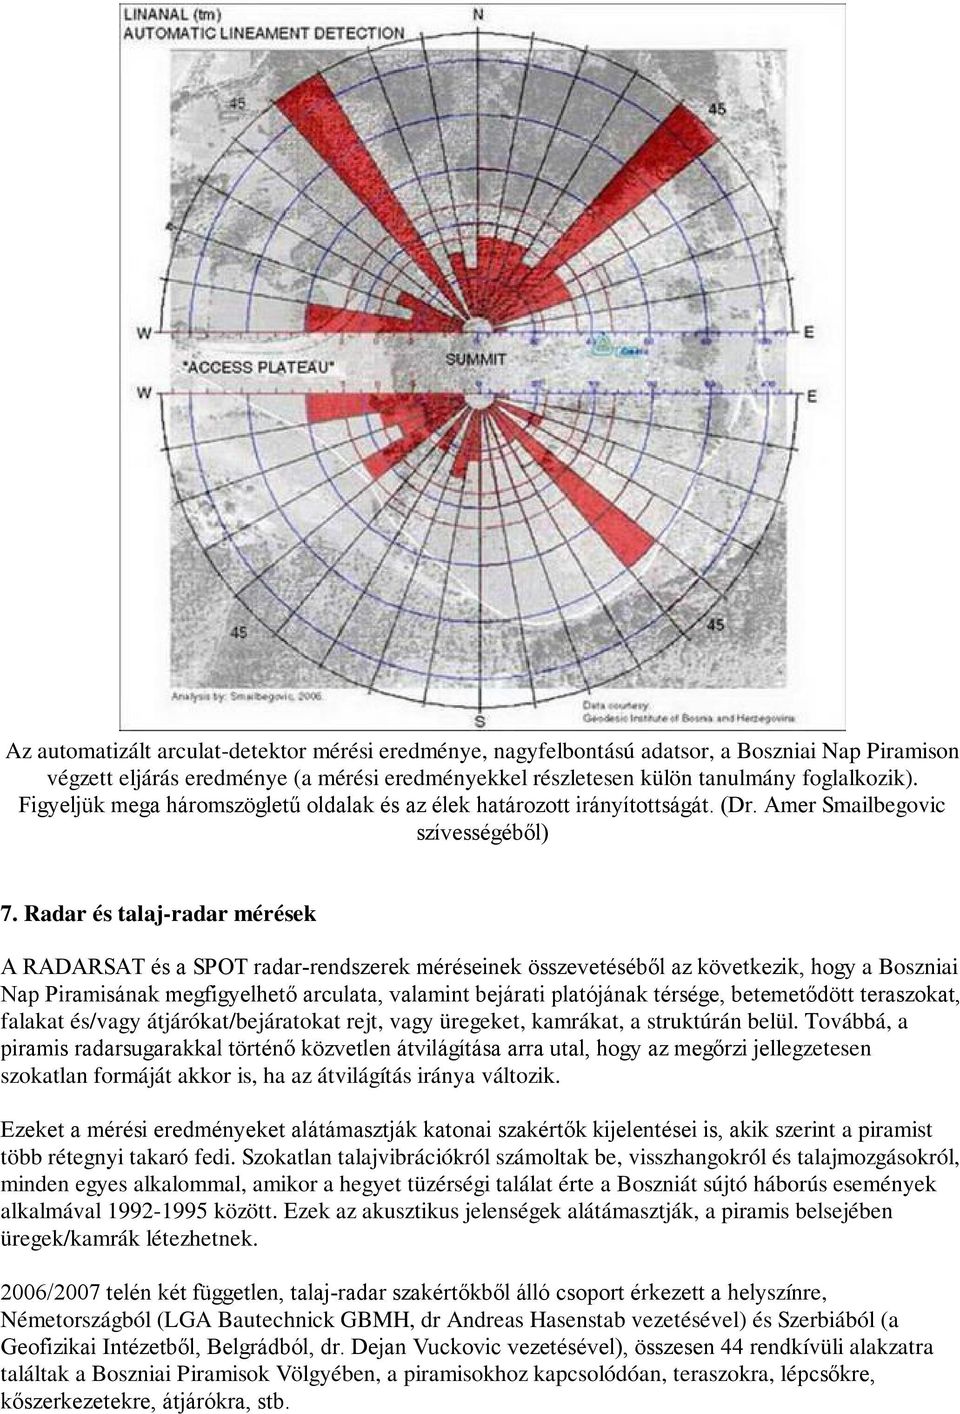 Radar és talaj-radar mérések A RADARSAT és a SPOT radar-rendszerek méréseinek összevetéséből az következik, hogy a Boszniai Nap Piramisának megfigyelhető arculata, valamint bejárati platójának